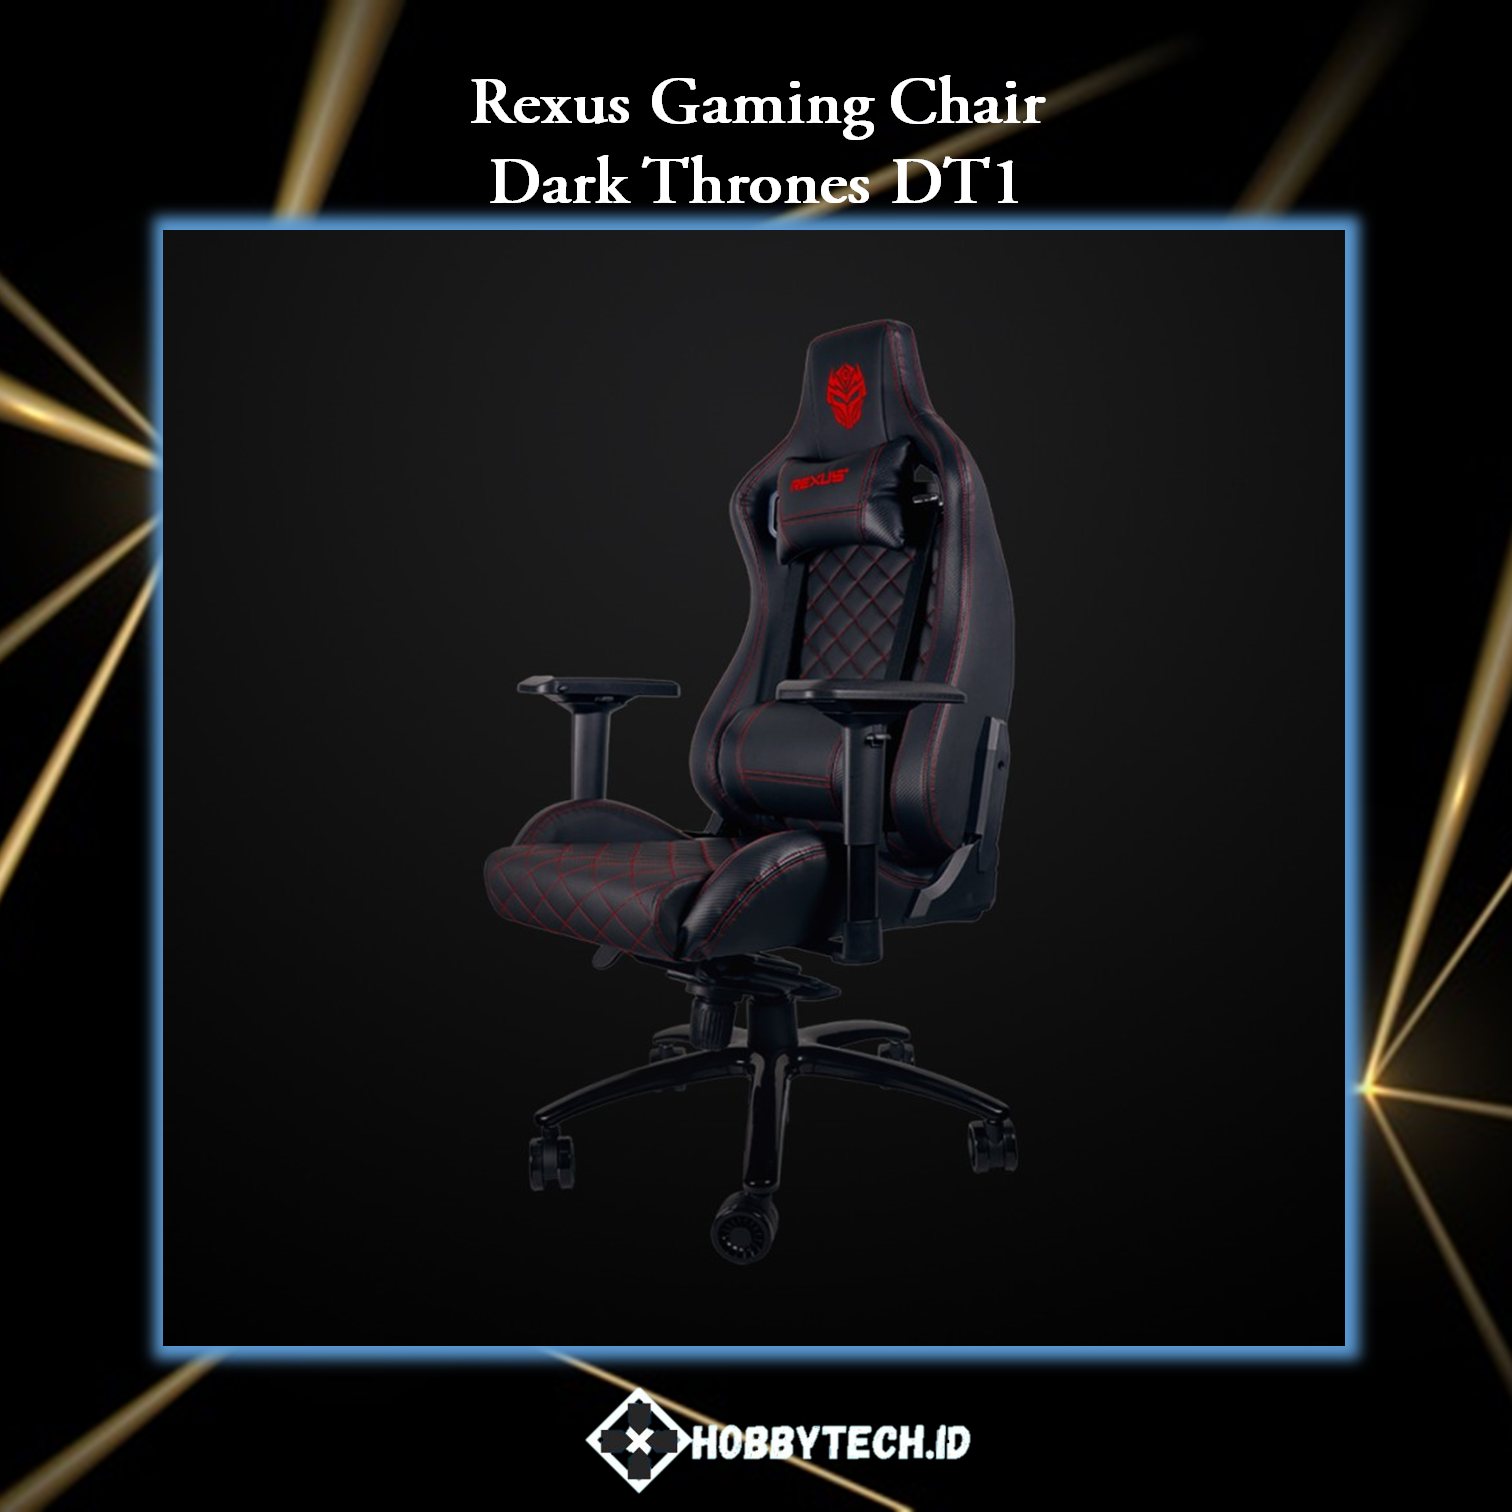 Rexus Gaming Chair Dark Thrones DT1